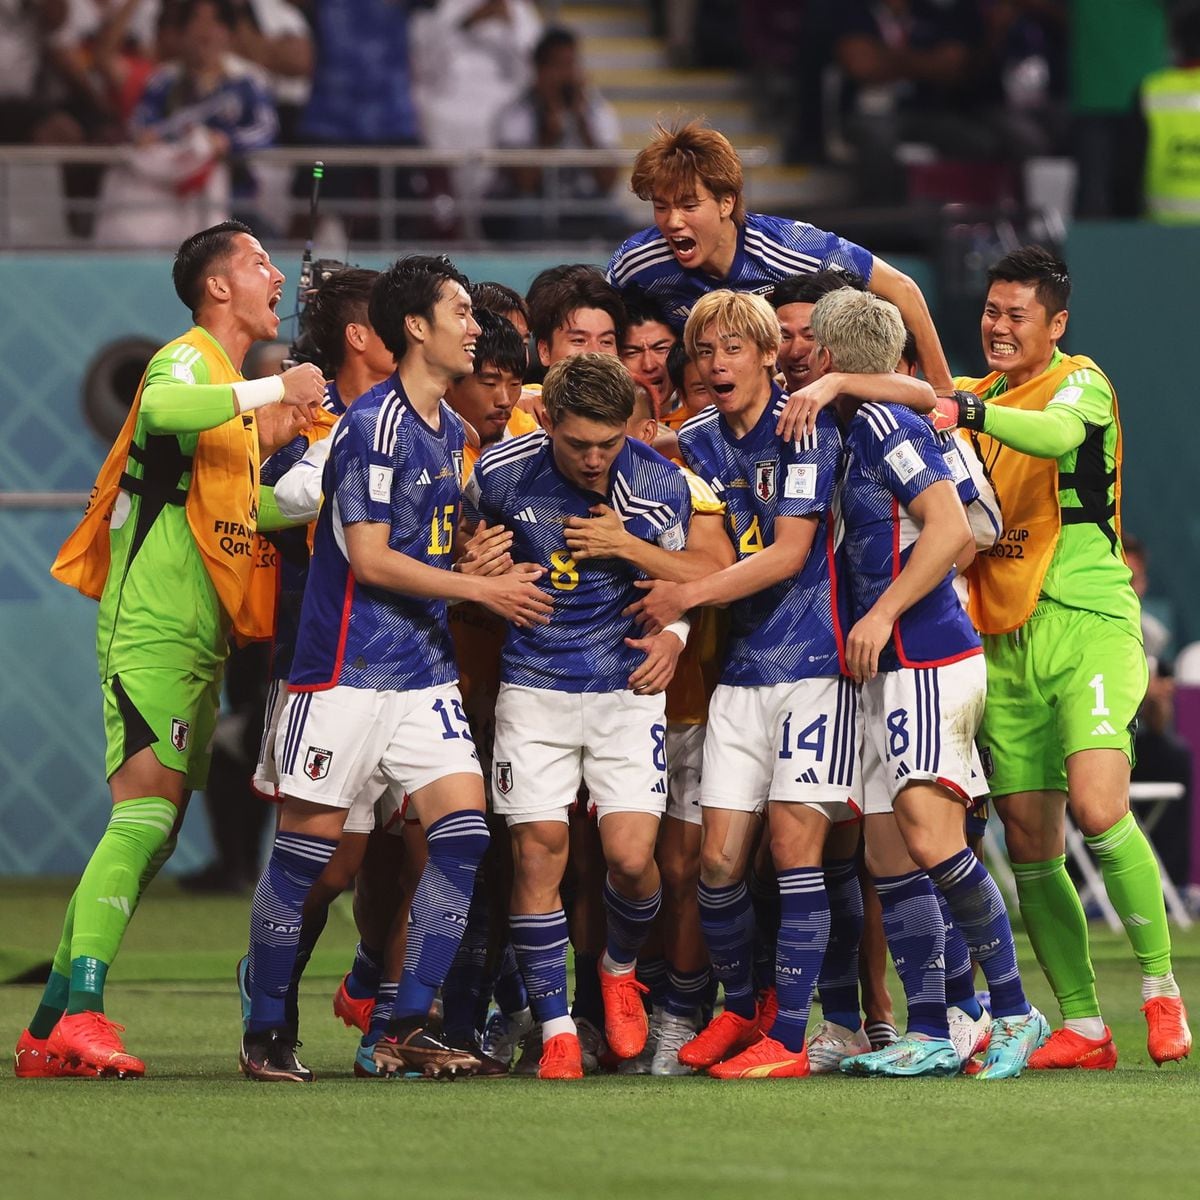 Como en Supercampeones. Japón derrota a Alemania en el Mundial